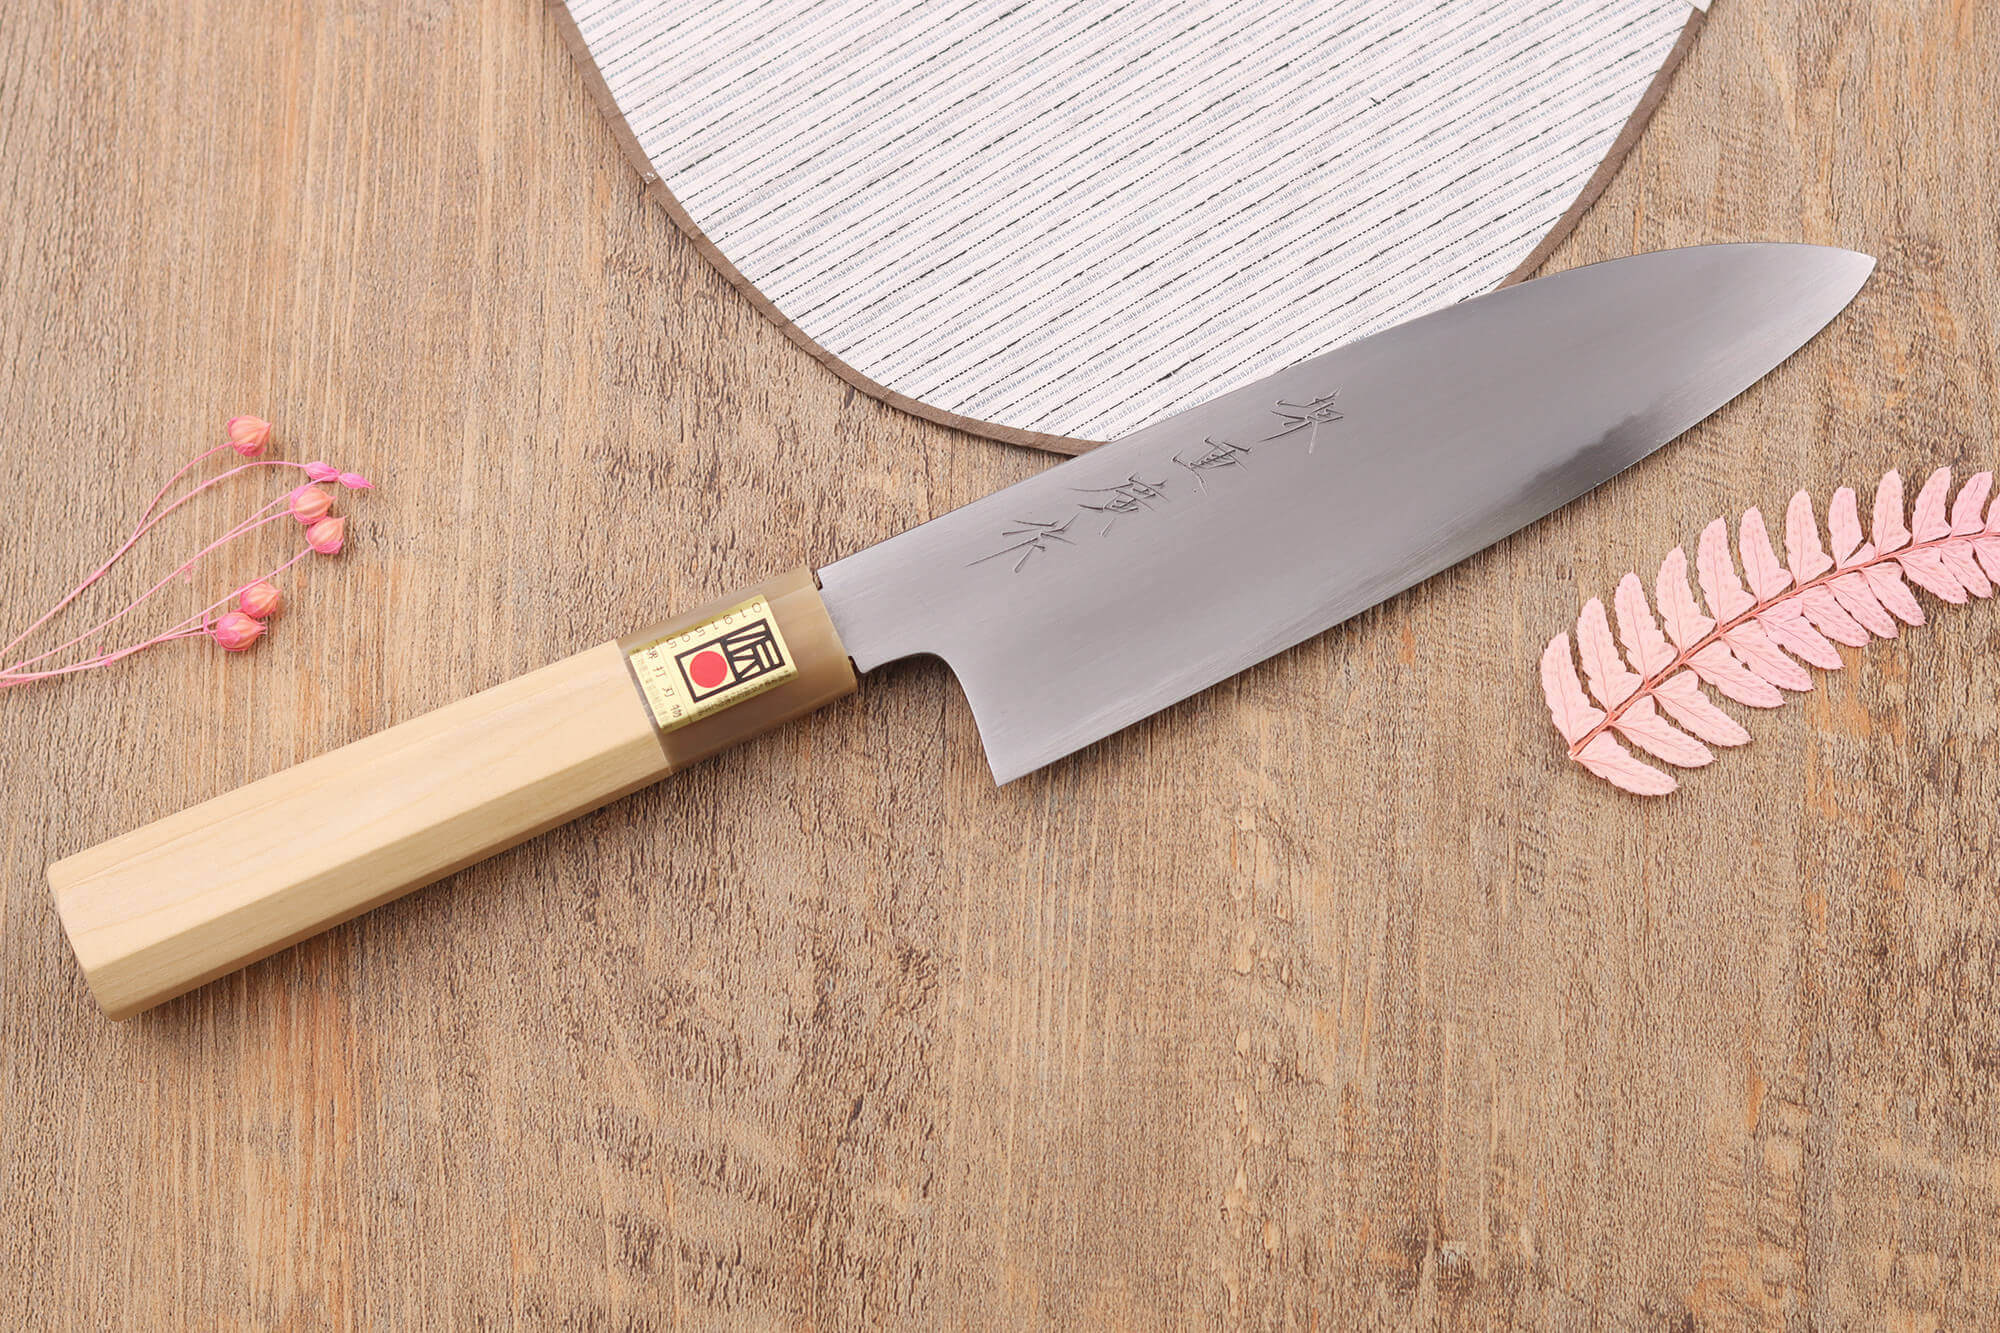 Couteau chef artisanal japonais Kagekiyo martelé 18cm